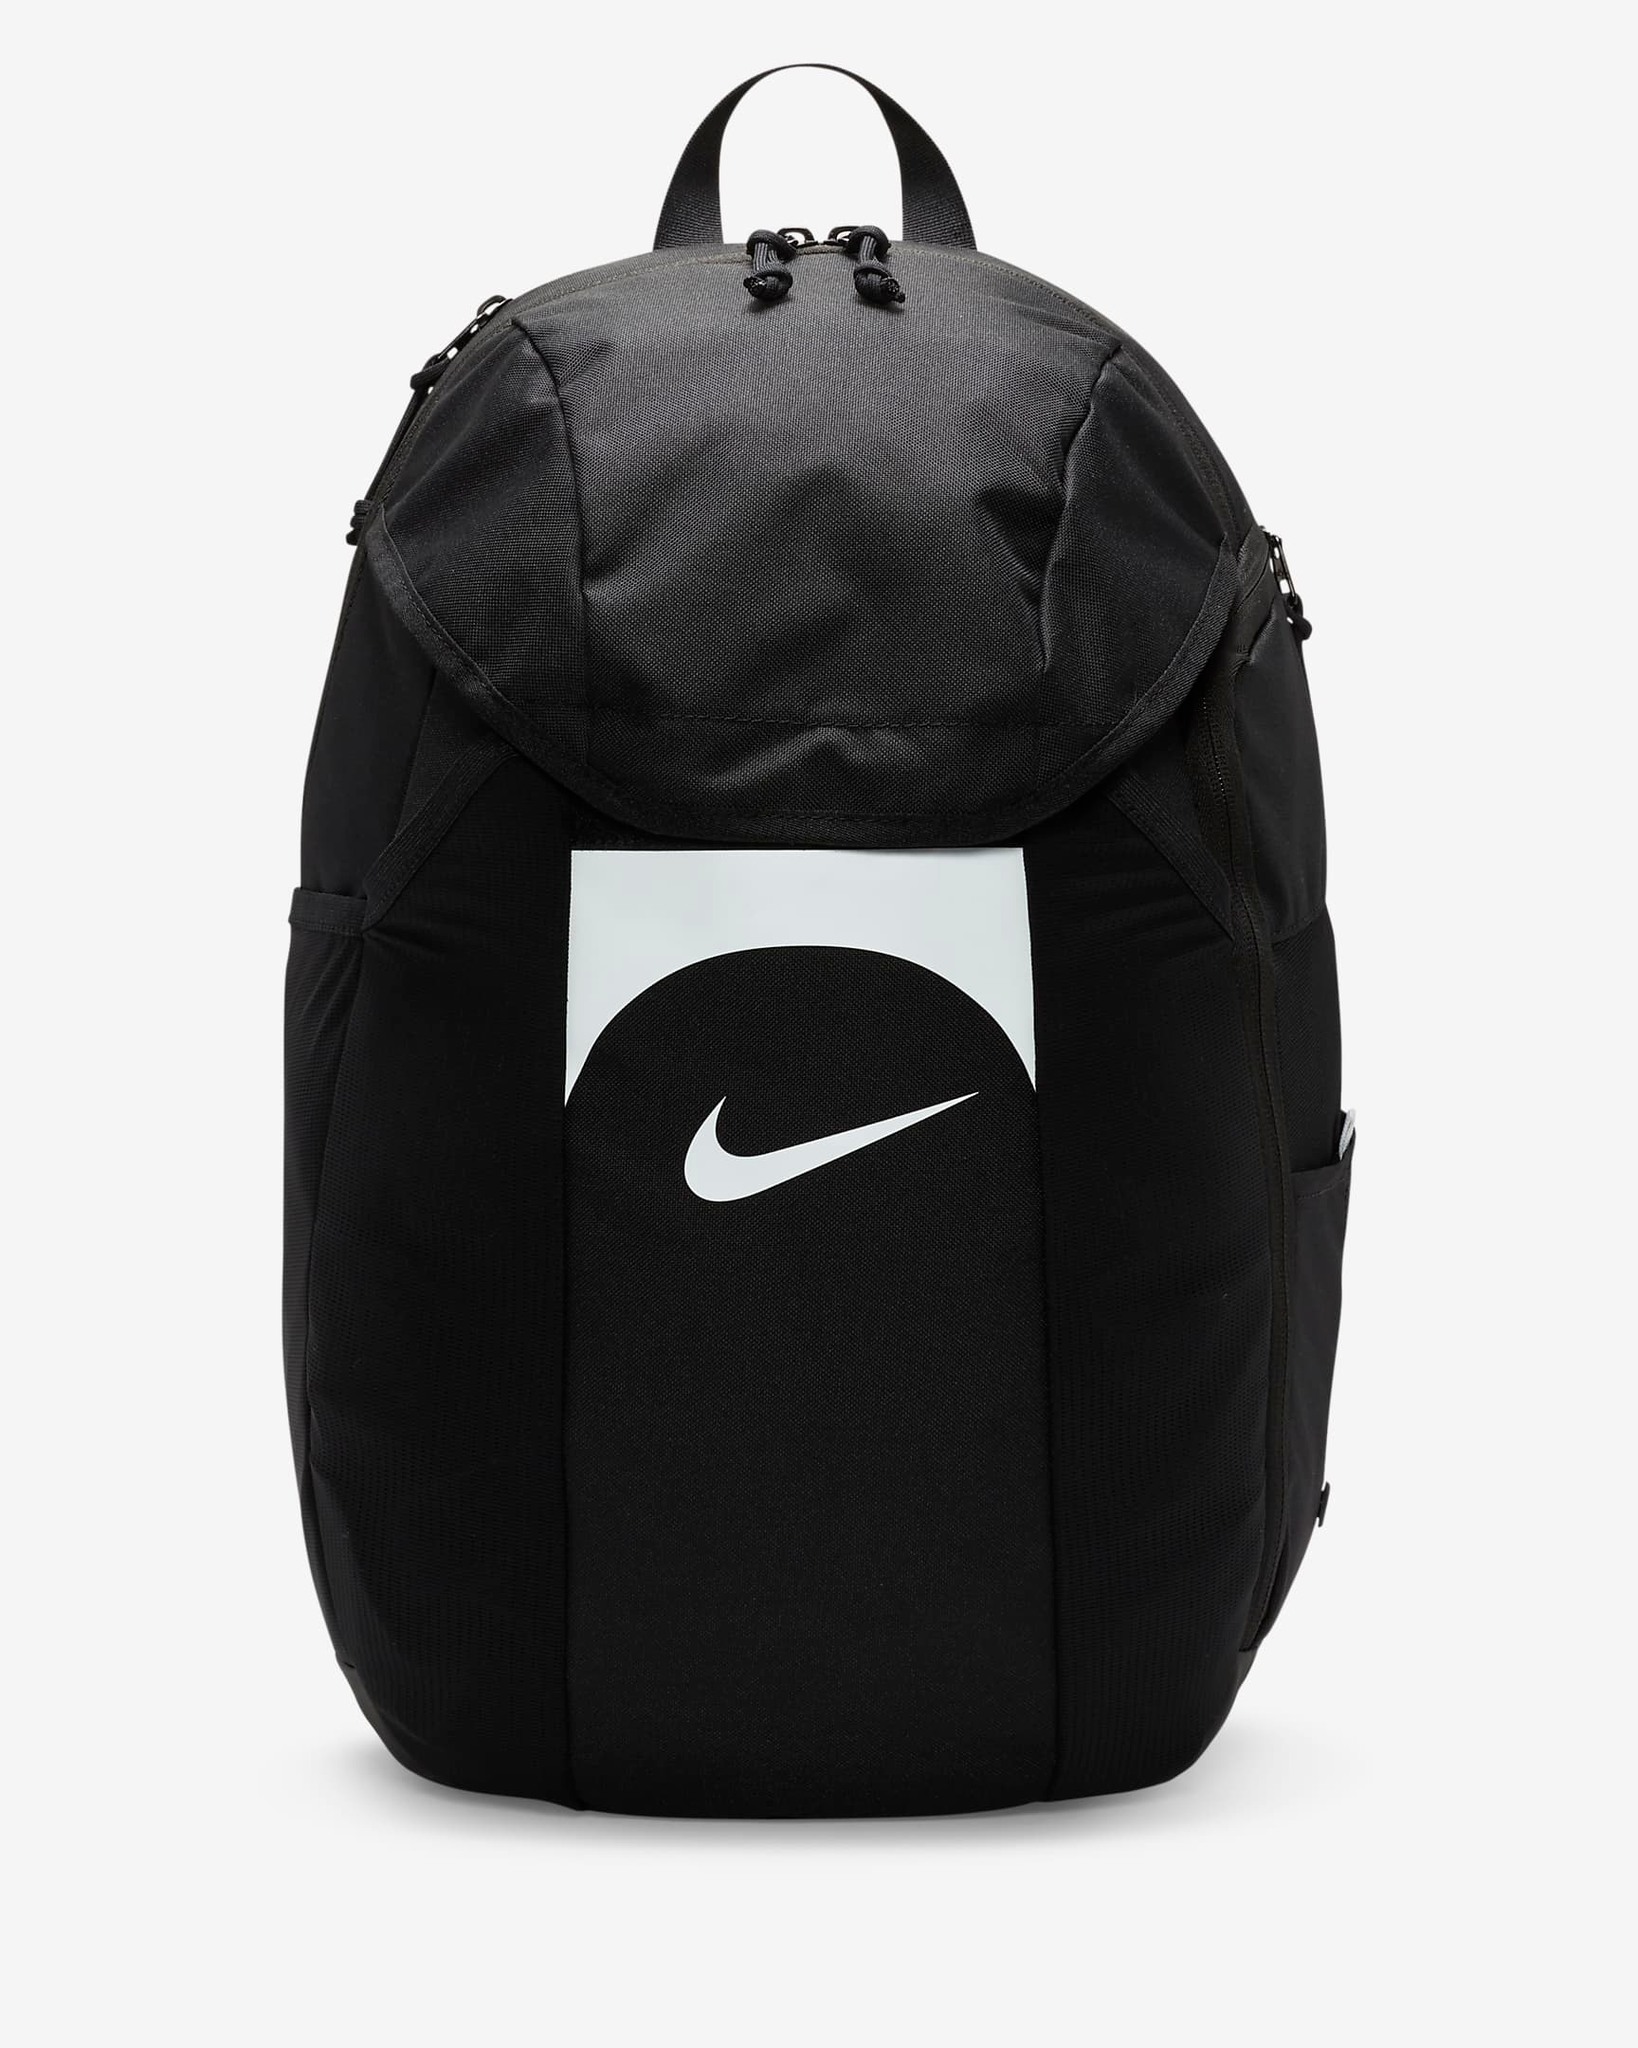 Phụ Kiện Chính Hãng - Balo Nike Academy Team 30L Backpack 'Black' - DV0761-011